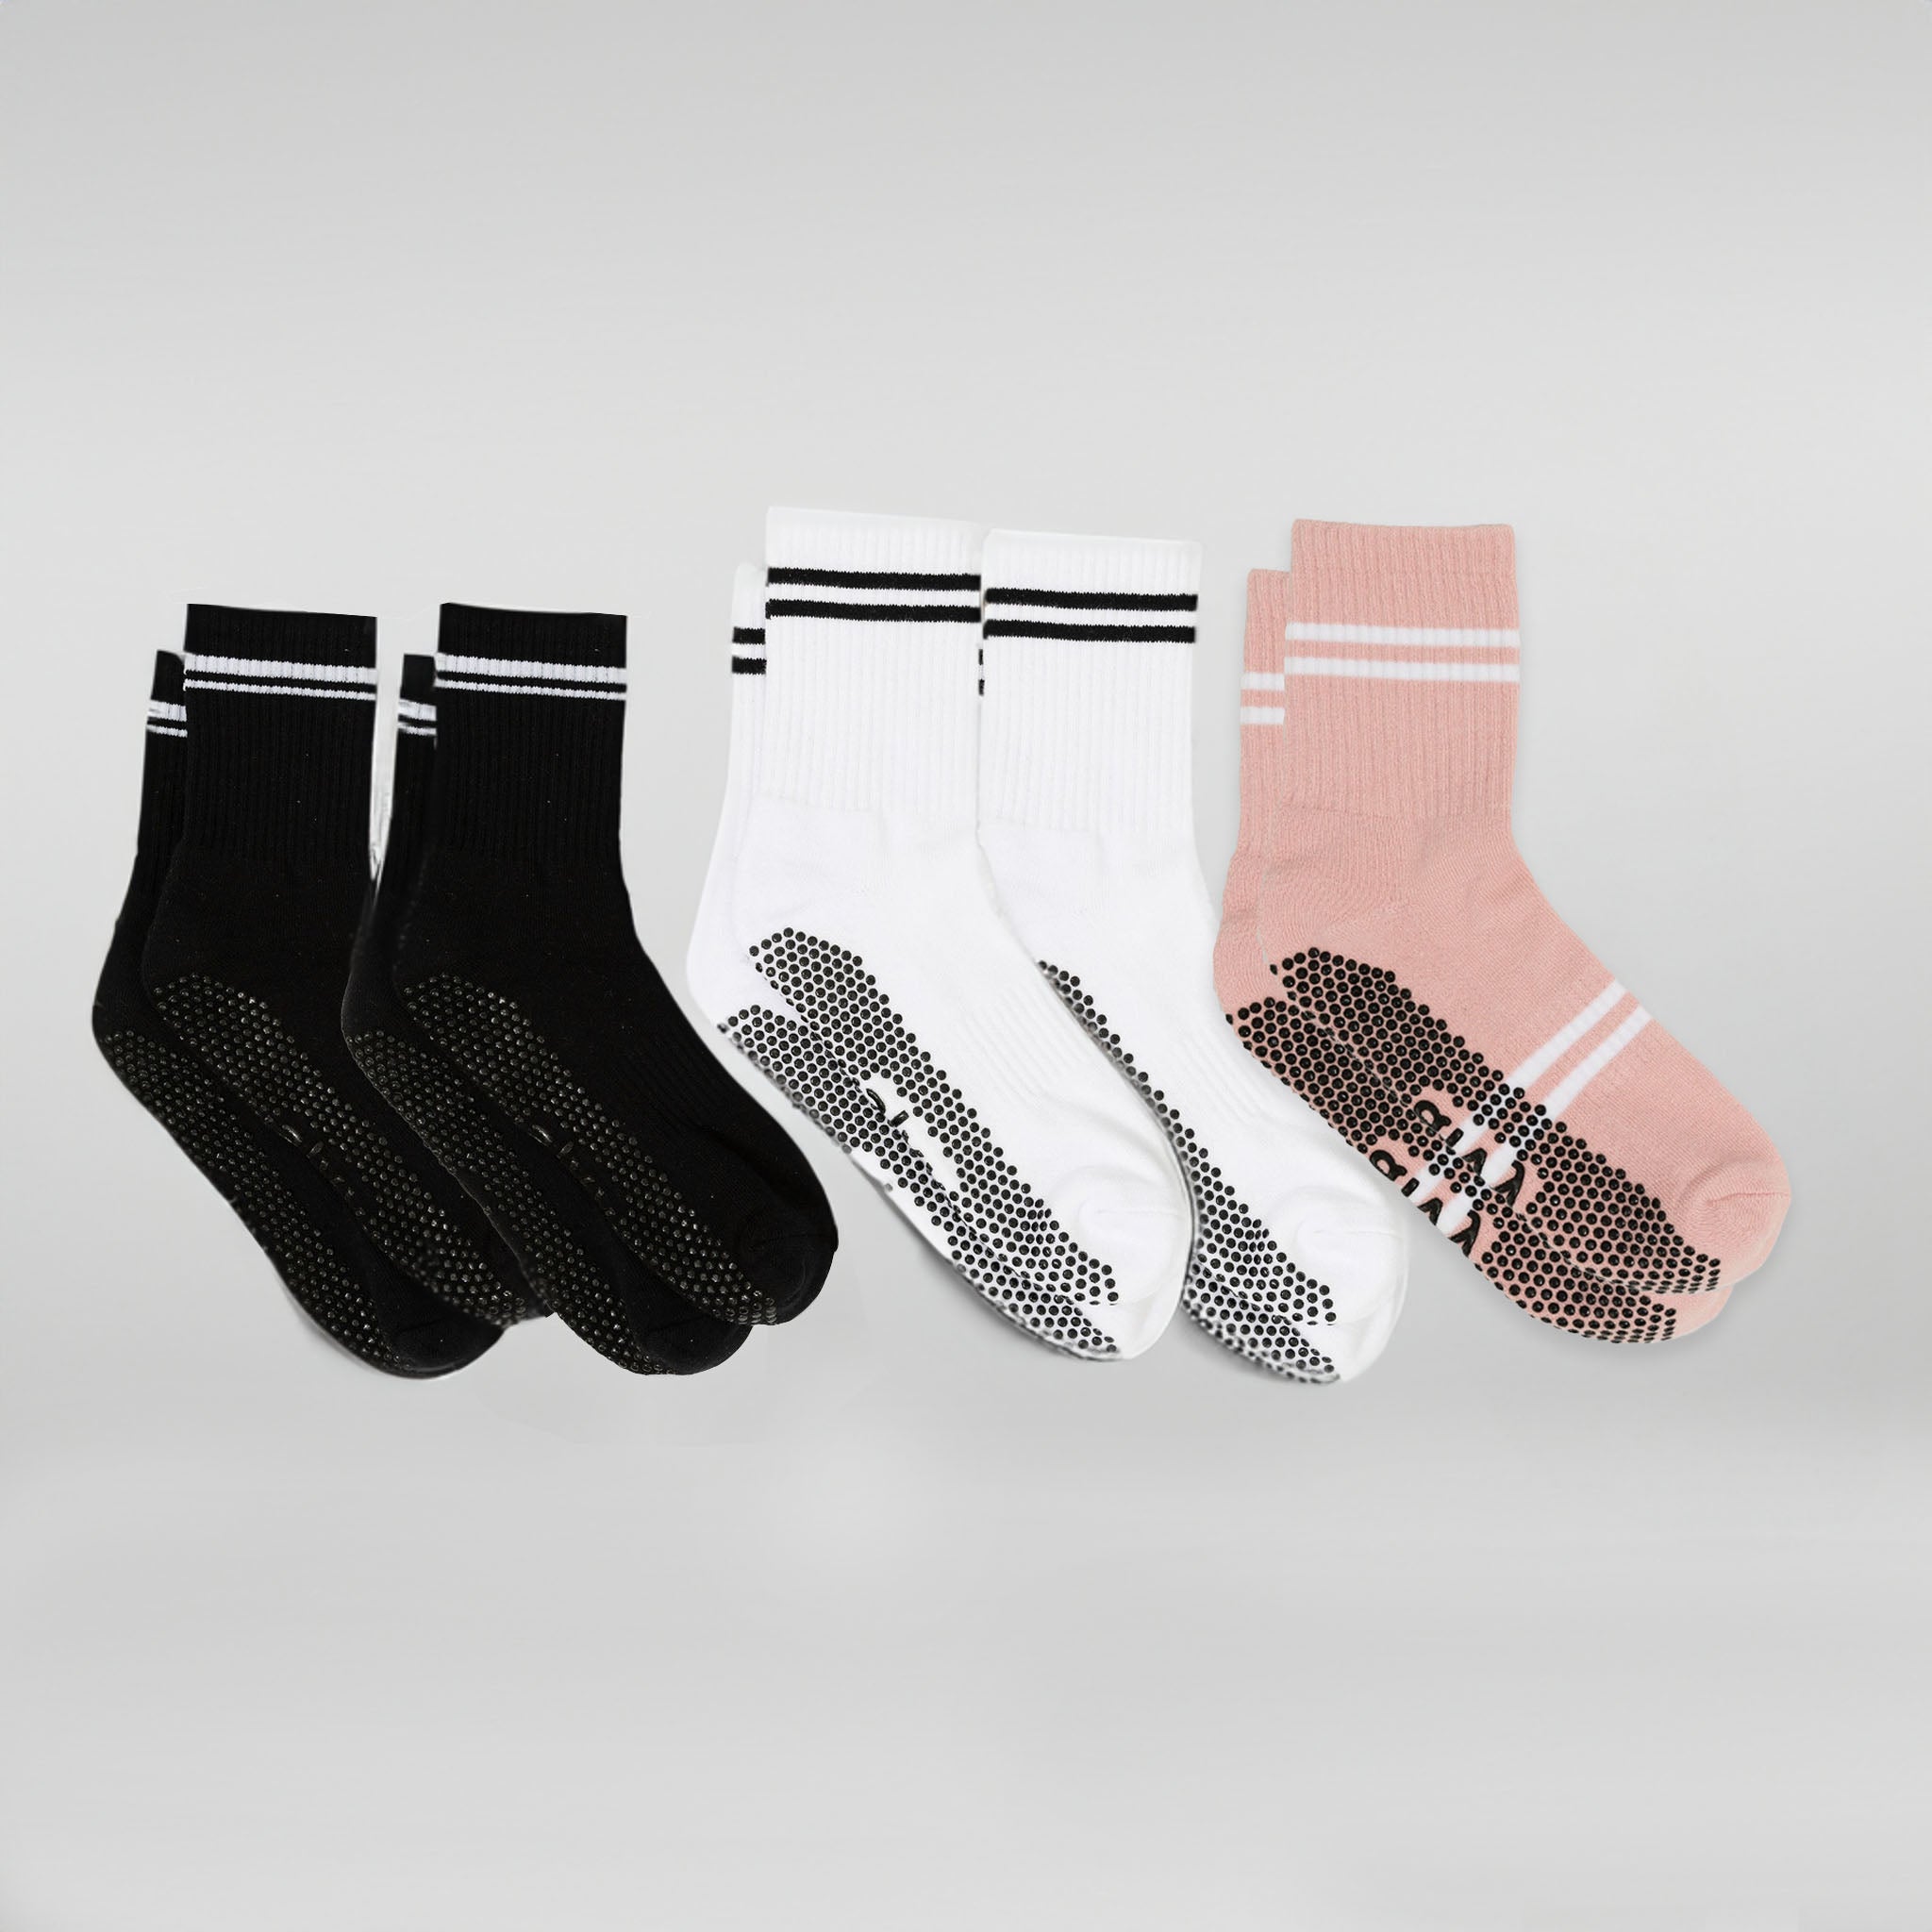 Essential Crew Grip Socks Bundle 5 Pack (Midnight Black, Pearl White, Baby Pink)